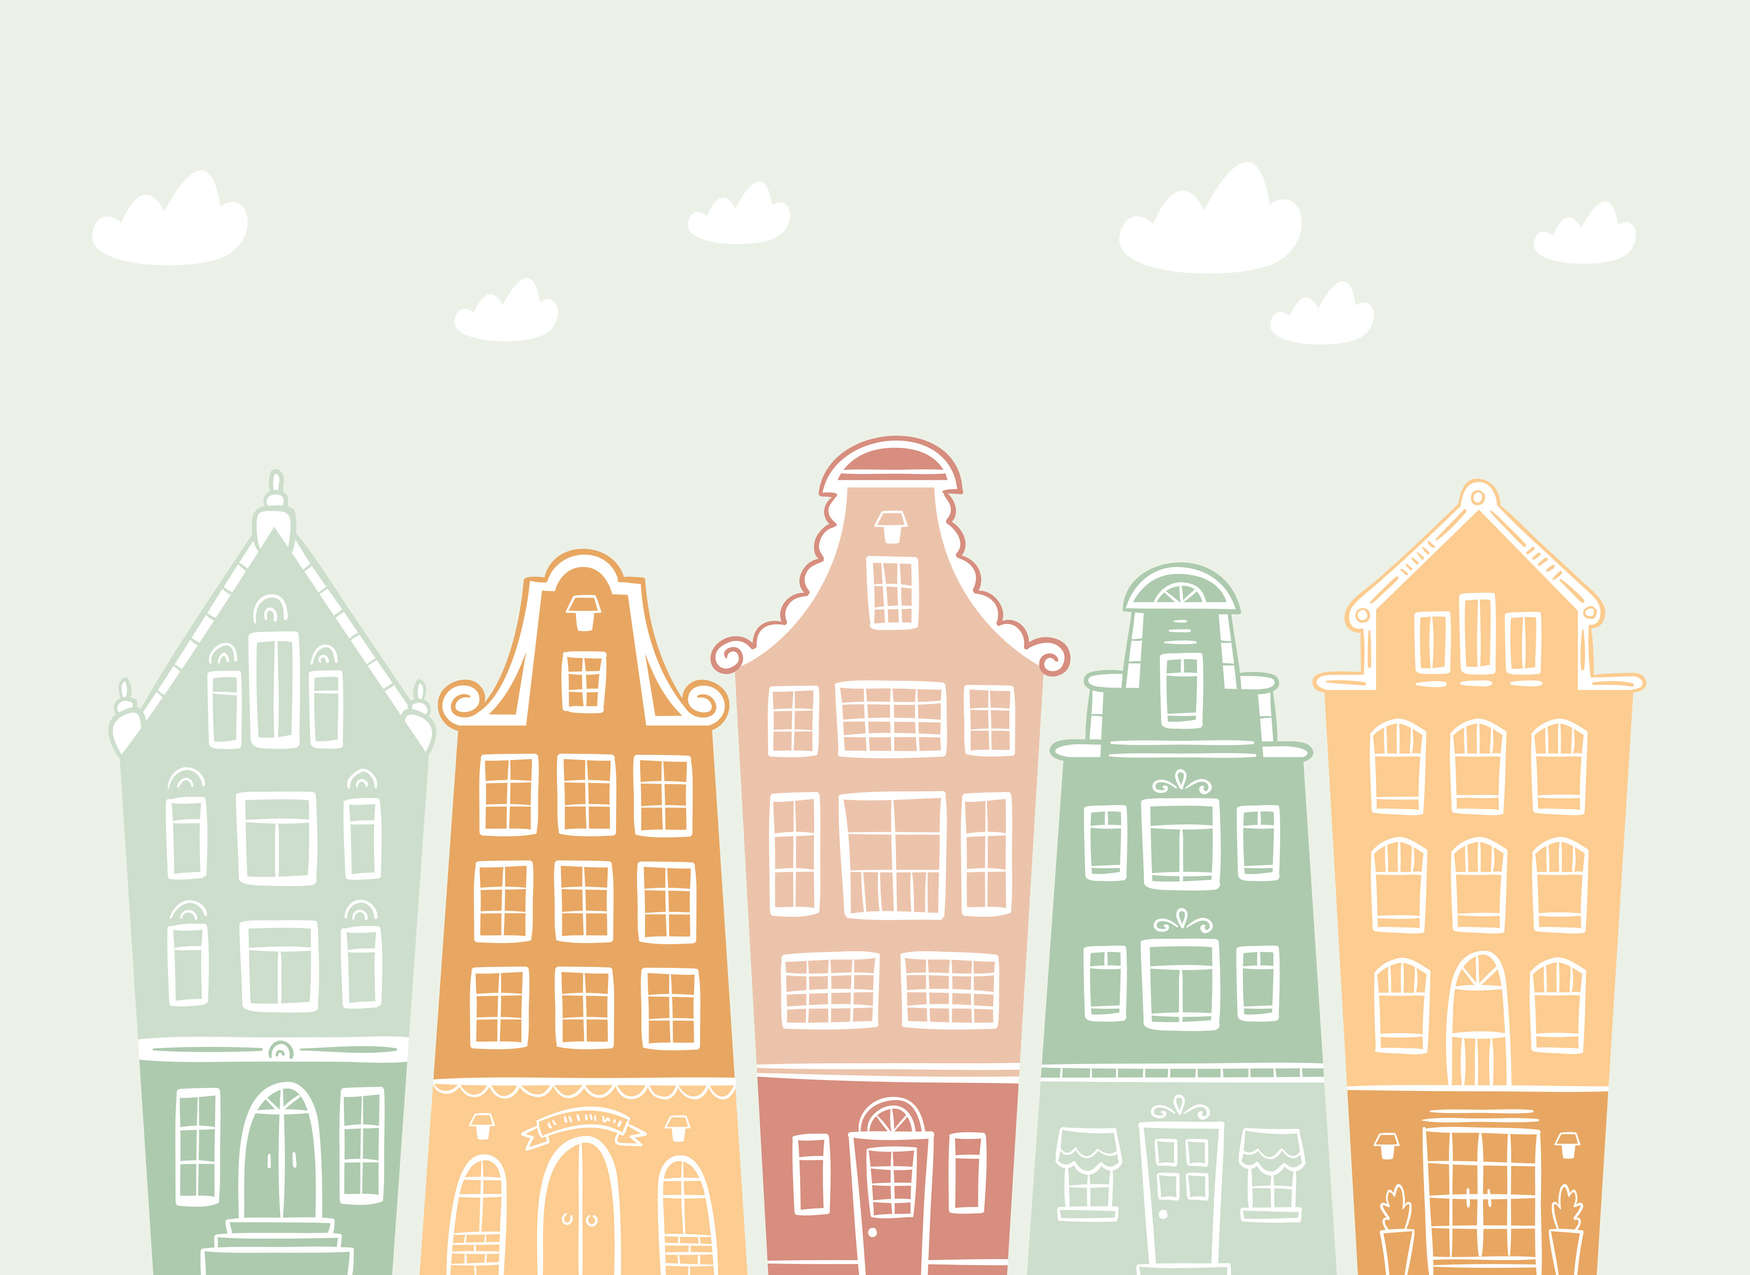             Papel pintado para la habitación de los niños "Small Town with Houses" (Ciudad pequeña con casas) - Pastel, colorido
        